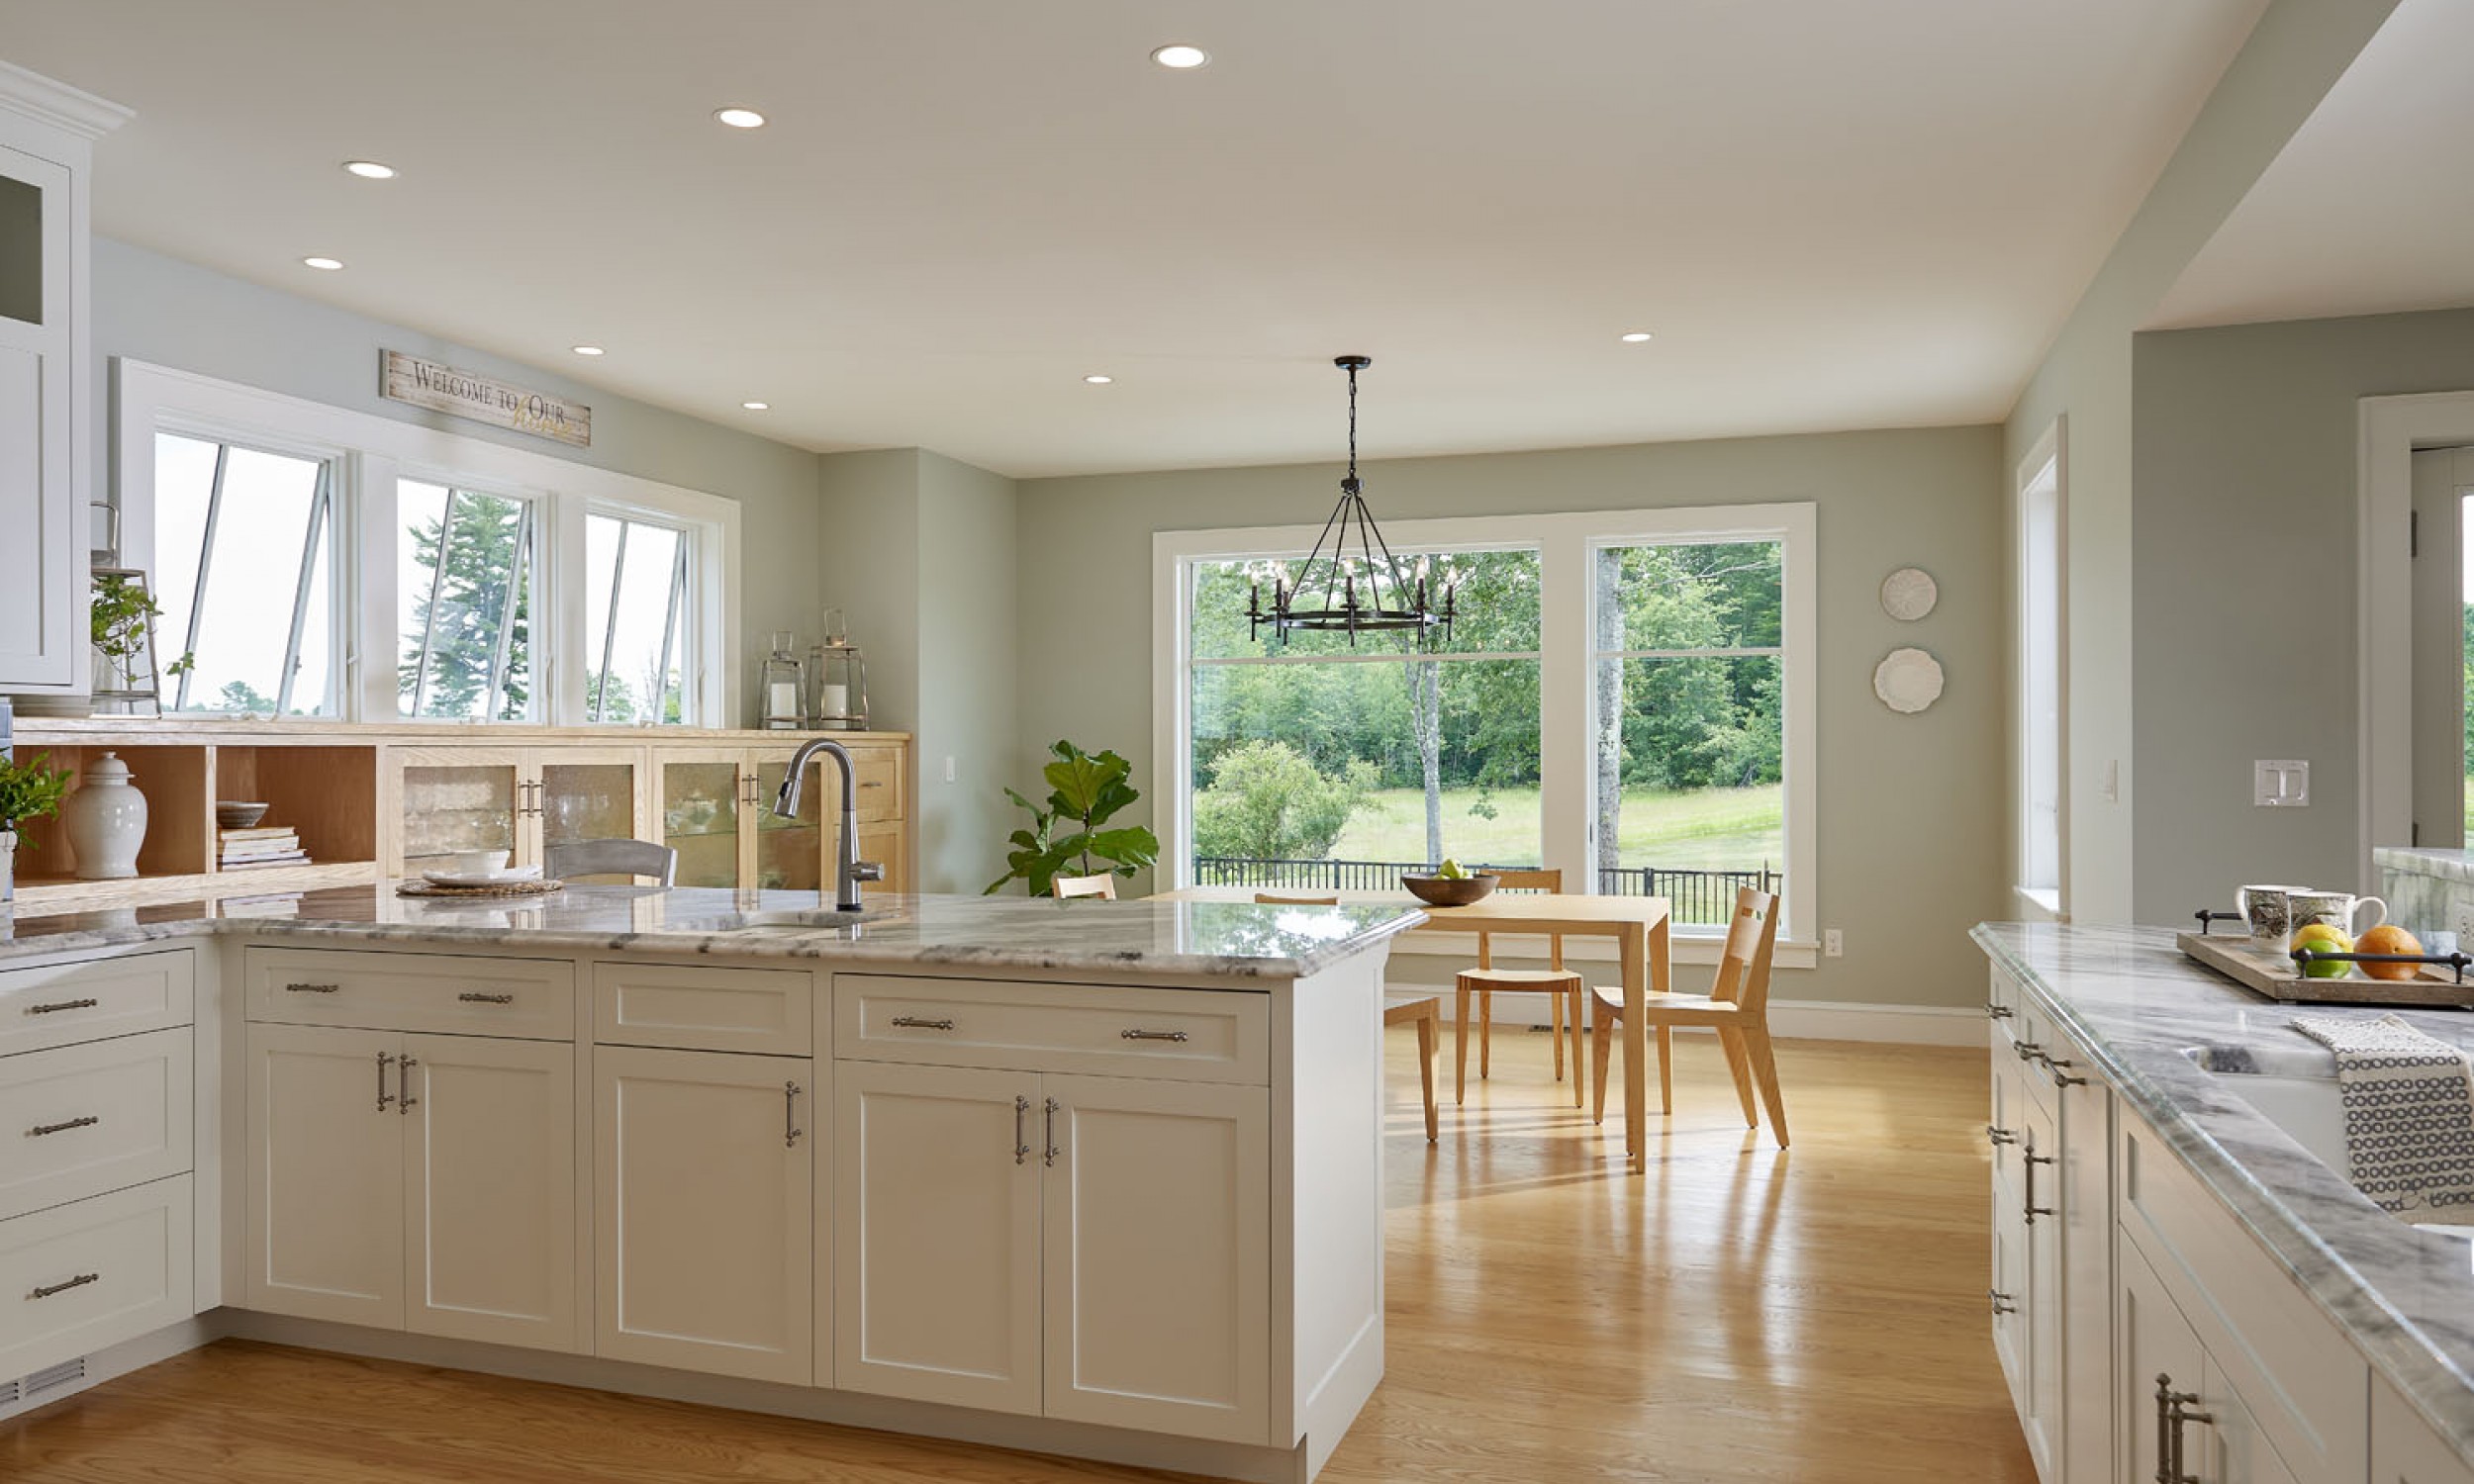 Kitchen, Tula table, Angela Adams, natural light, open kitchen, ash flooring, Maine Architect